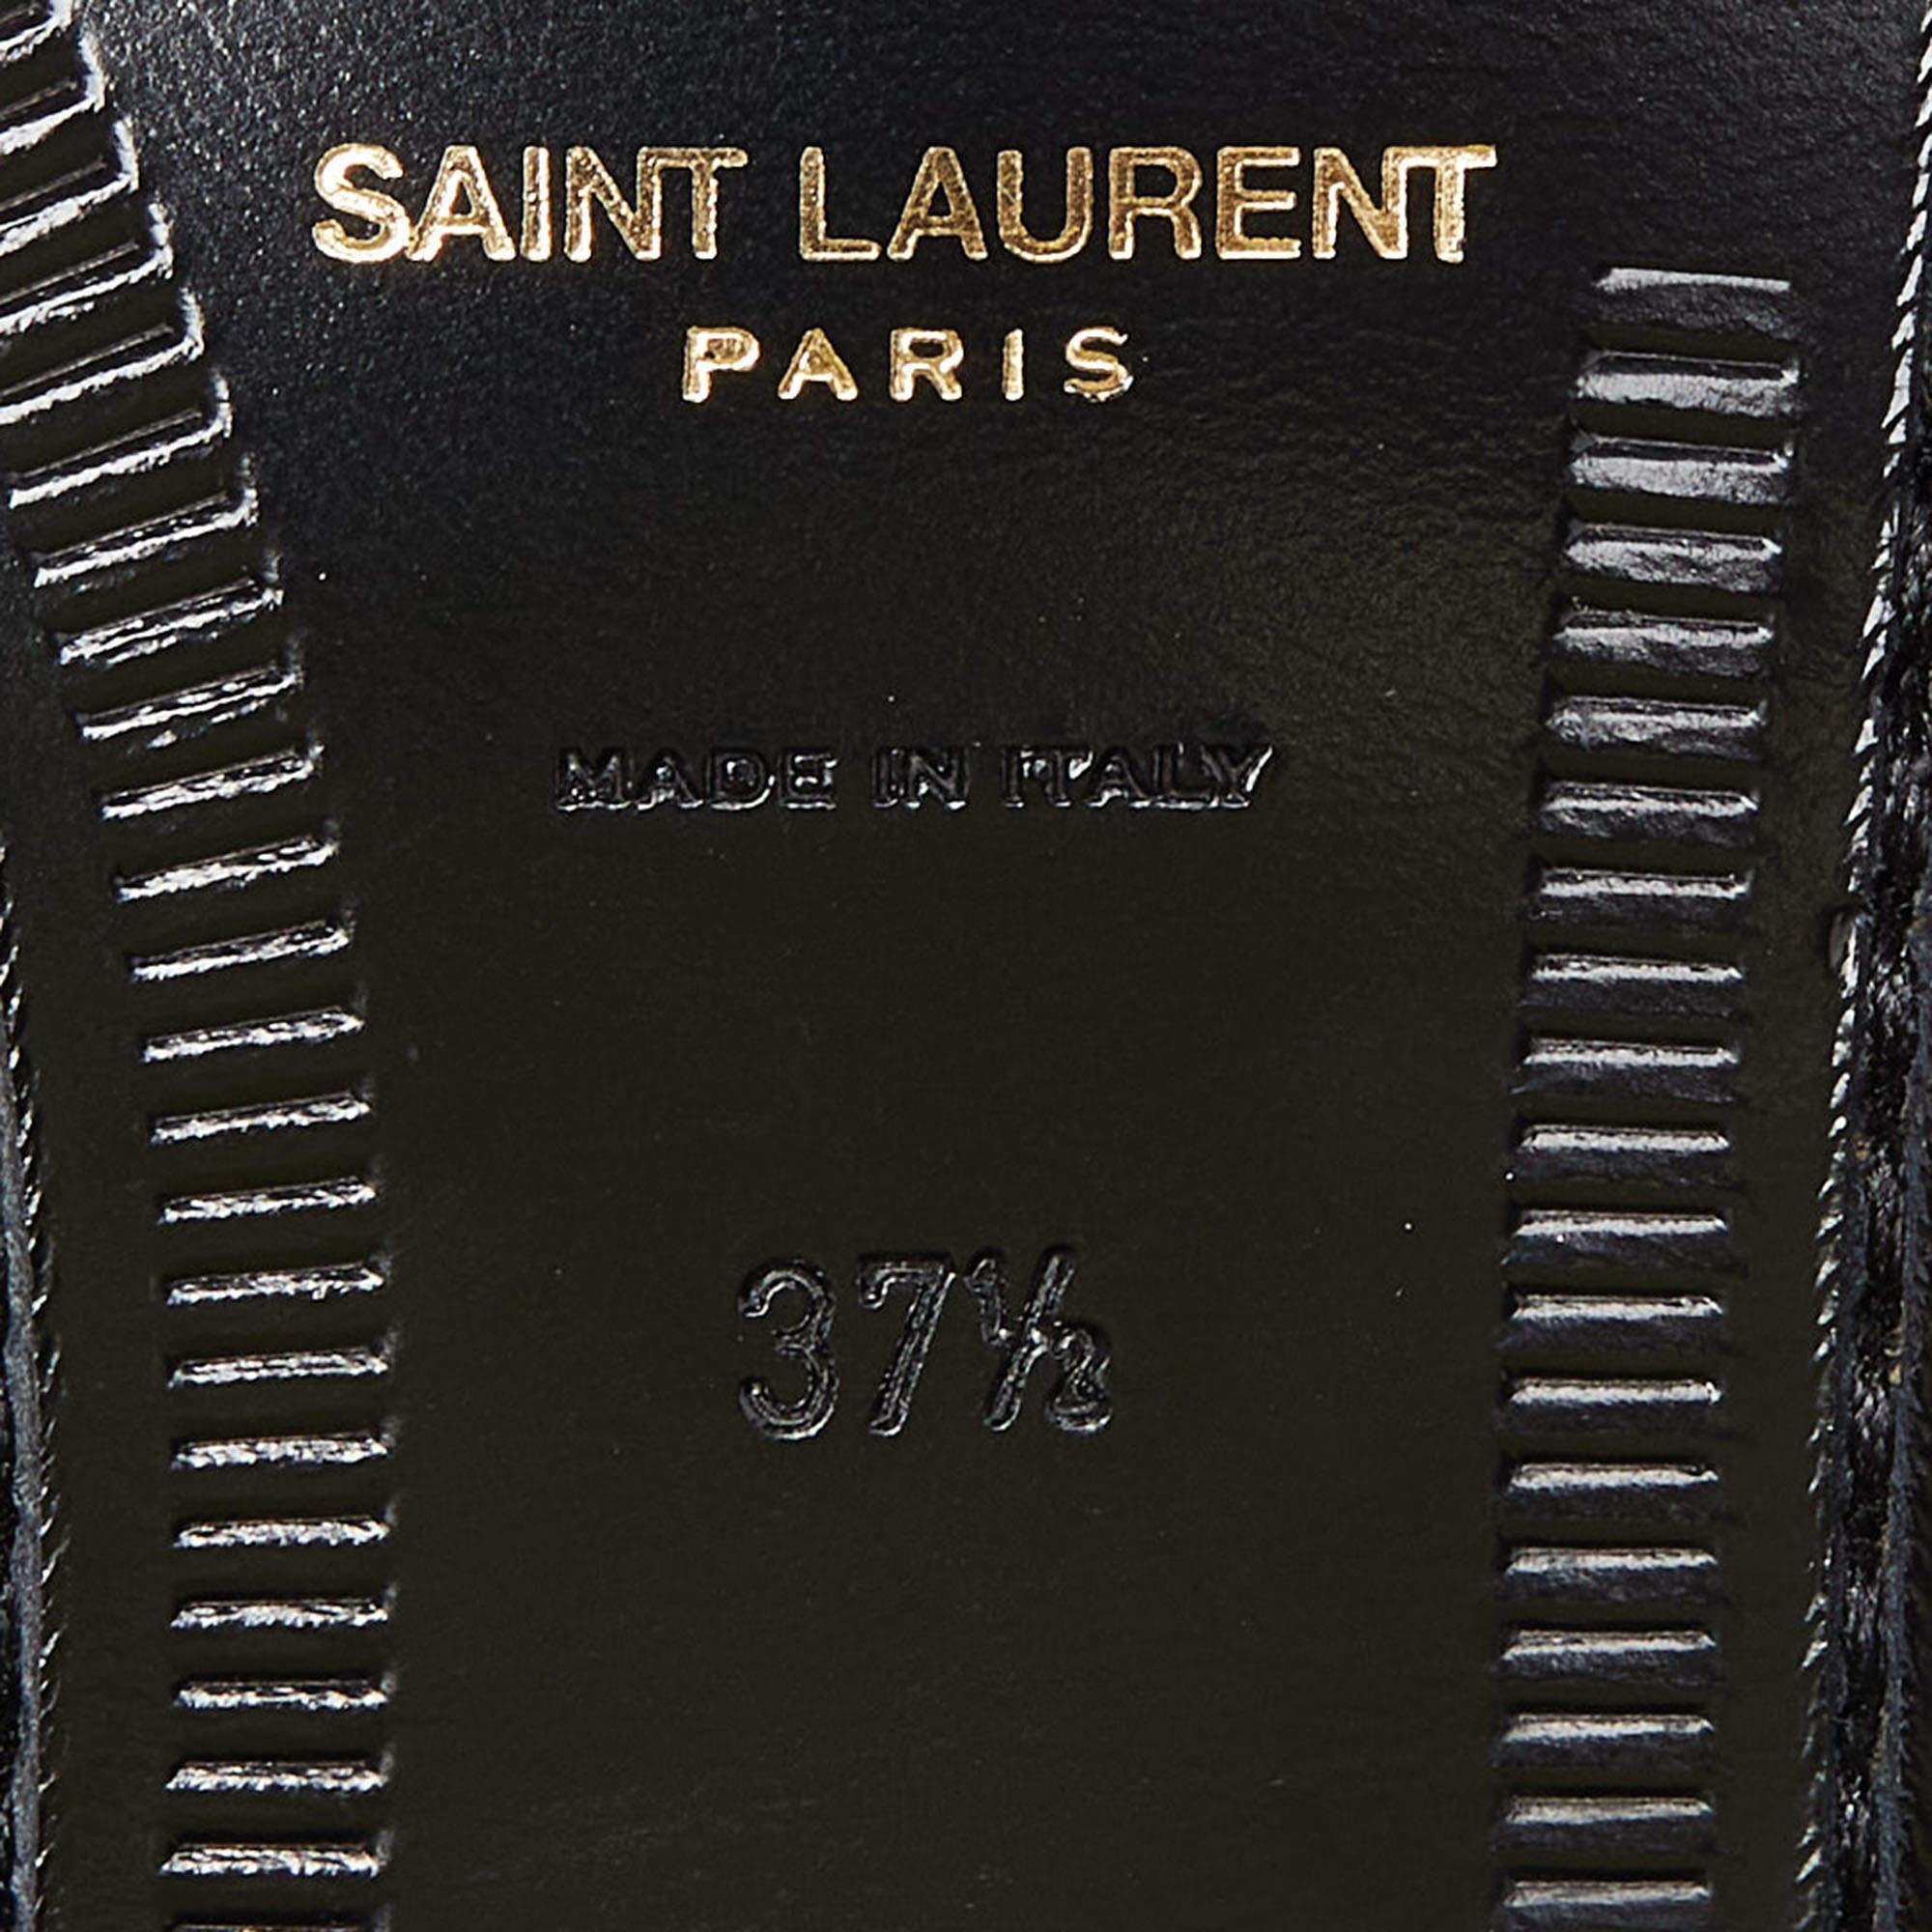 Saint Laurent Black Patent Leather Penny Le Loafers Size 37.5 5